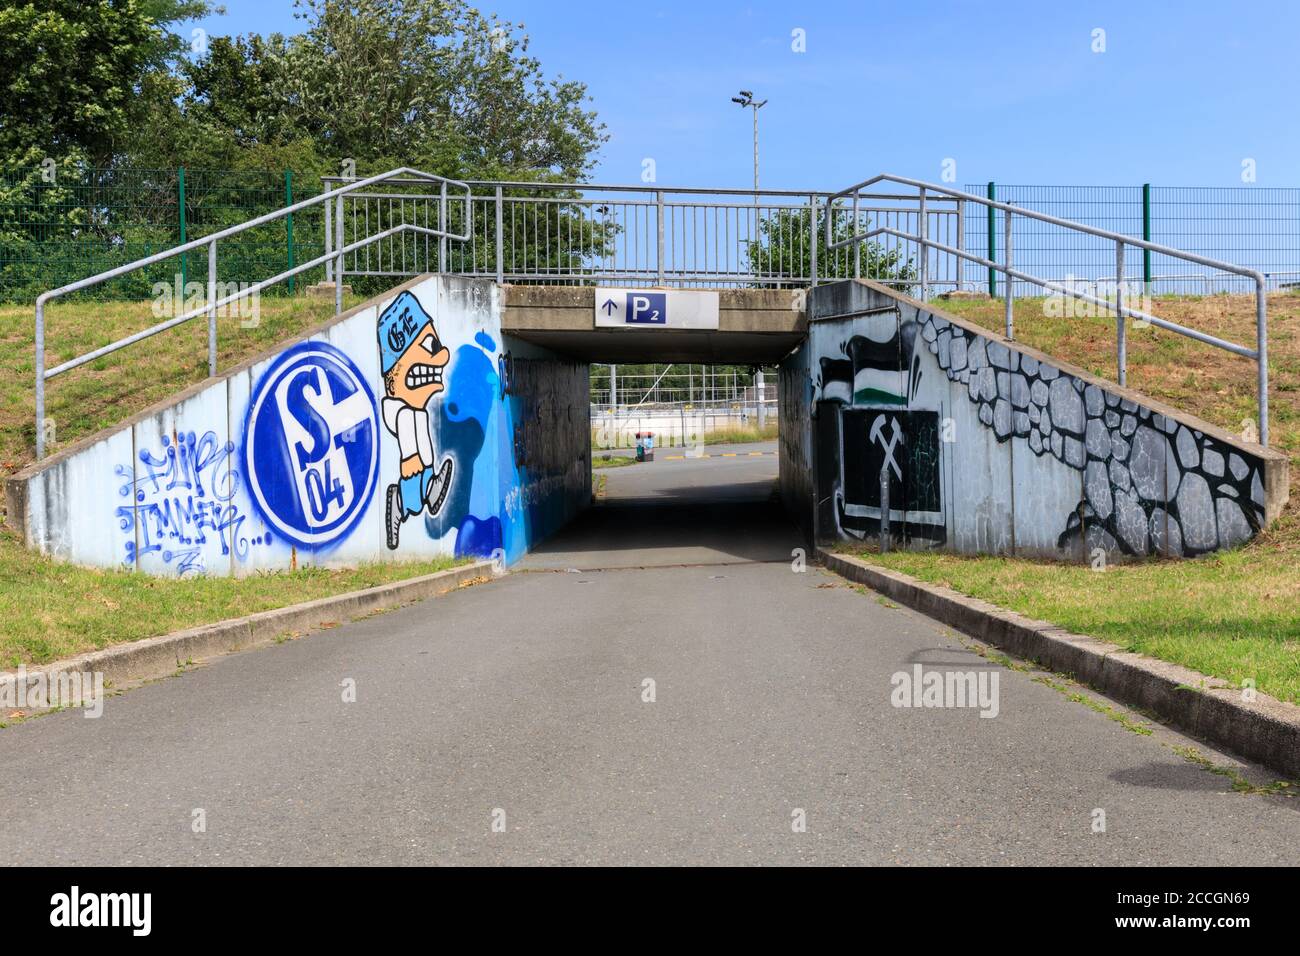 Arena Auf Schalke Veltins-Arena Walkway, stade de football FC Schalke 04 à Gelsenkirchen, Rhénanie-du-Nord-Westphalie, Allemagne Banque D'Images